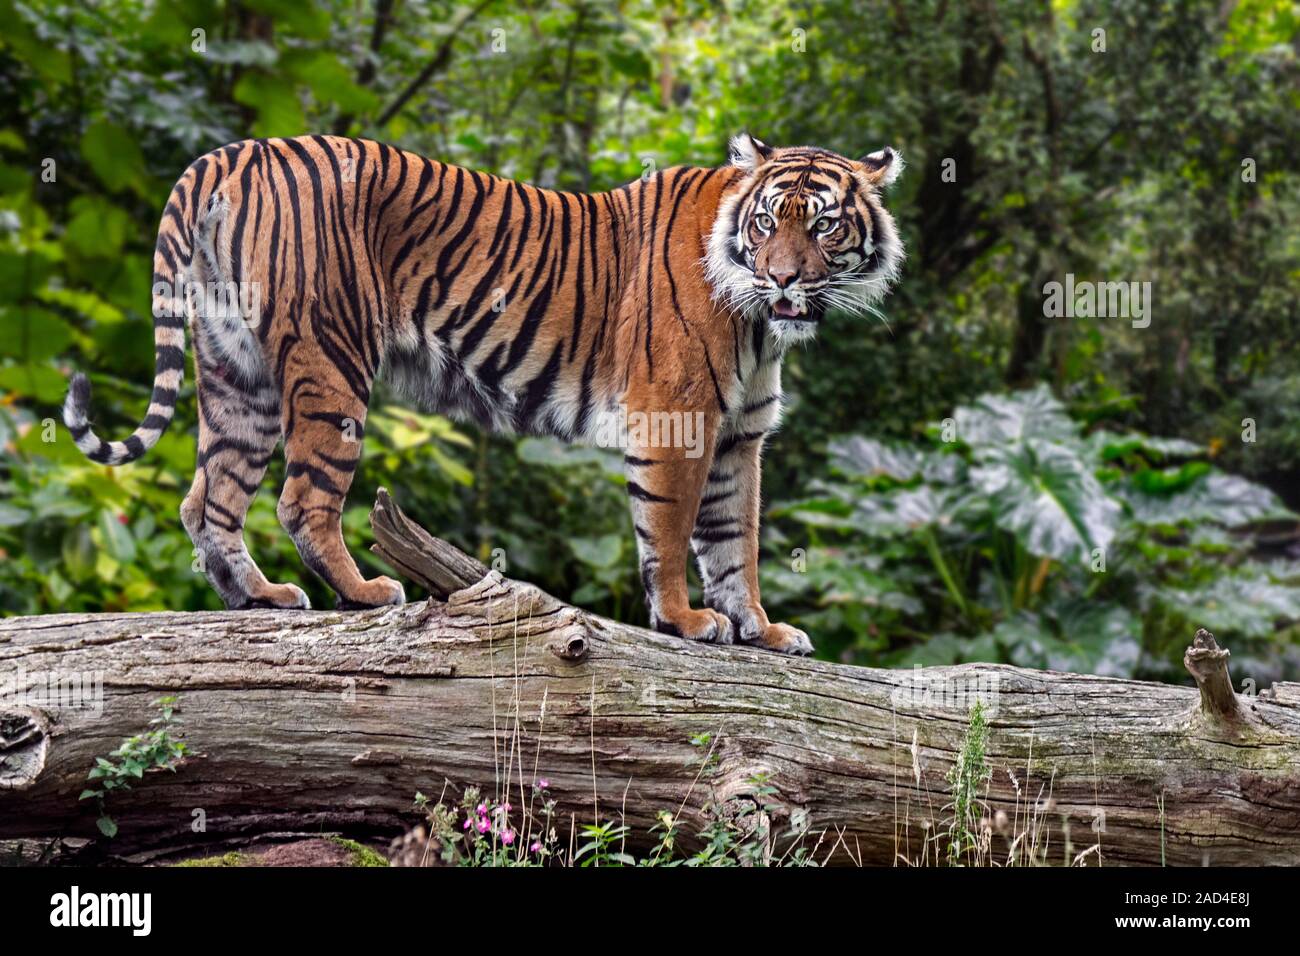 Tigre de Sumatra (Panthera tigris sondaica) sur le tronc d'arbre tombé dans la forêt tropicale, originaire de l'île indonésienne de Sumatra, Indonésie Banque D'Images